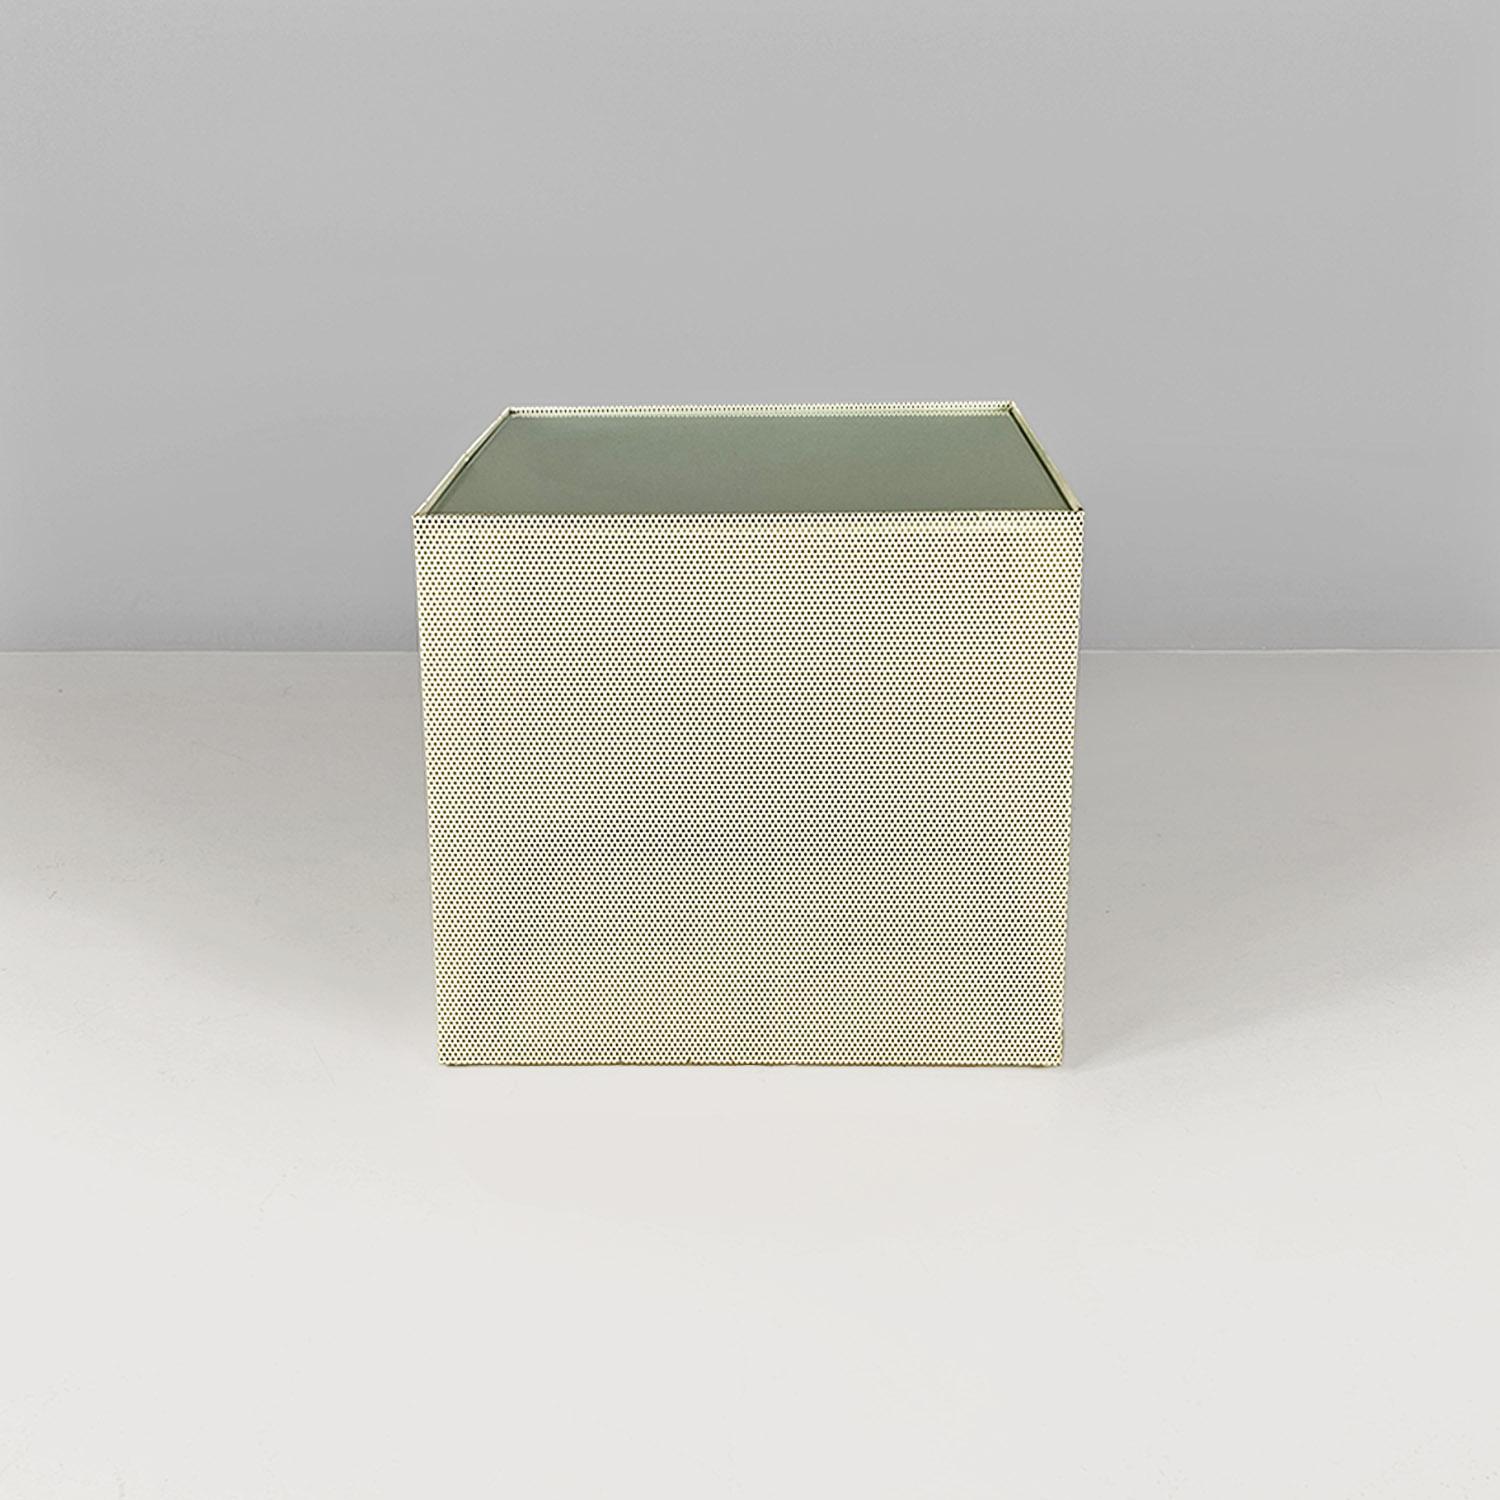 Ein fast würfelförmiger Couchtisch aus weißem, mikroperforiertem Metall mit einer Platte aus mattiertem Glas.
c. 1980
Guter Zustand.
Maße in cm 49x49x45h
Ein fast würfelförmiger Tisch oder eine fast würfelförmige Tischplatte, nur wenige Zentimeter